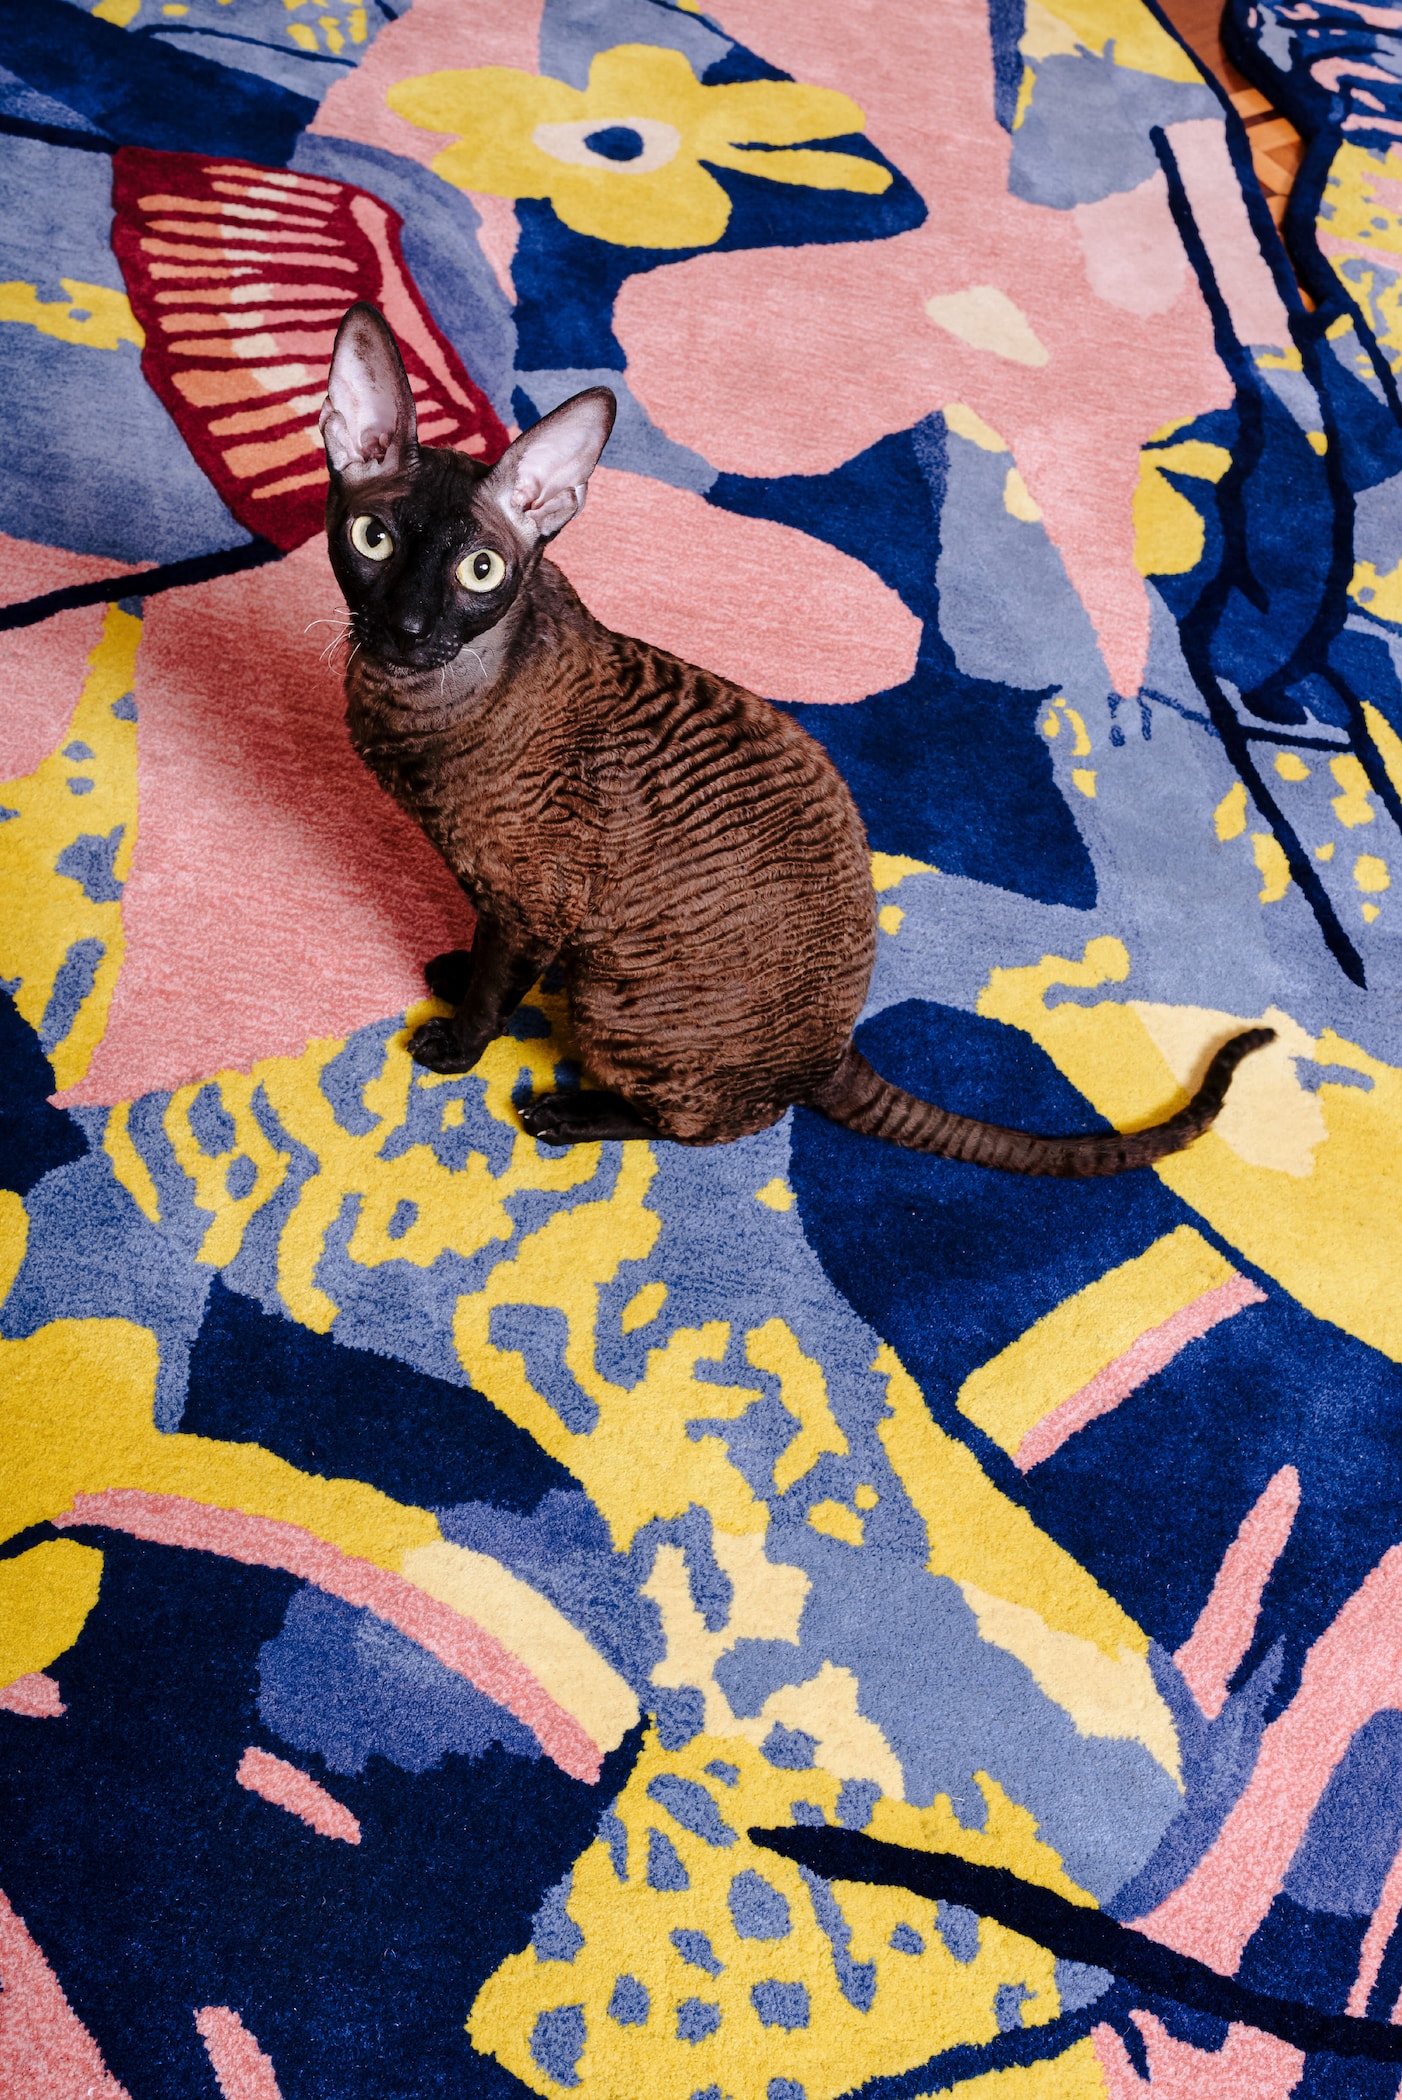 cc-tapis 携手 P.A.M. 呈献「Floordrobe」联名地毯系列